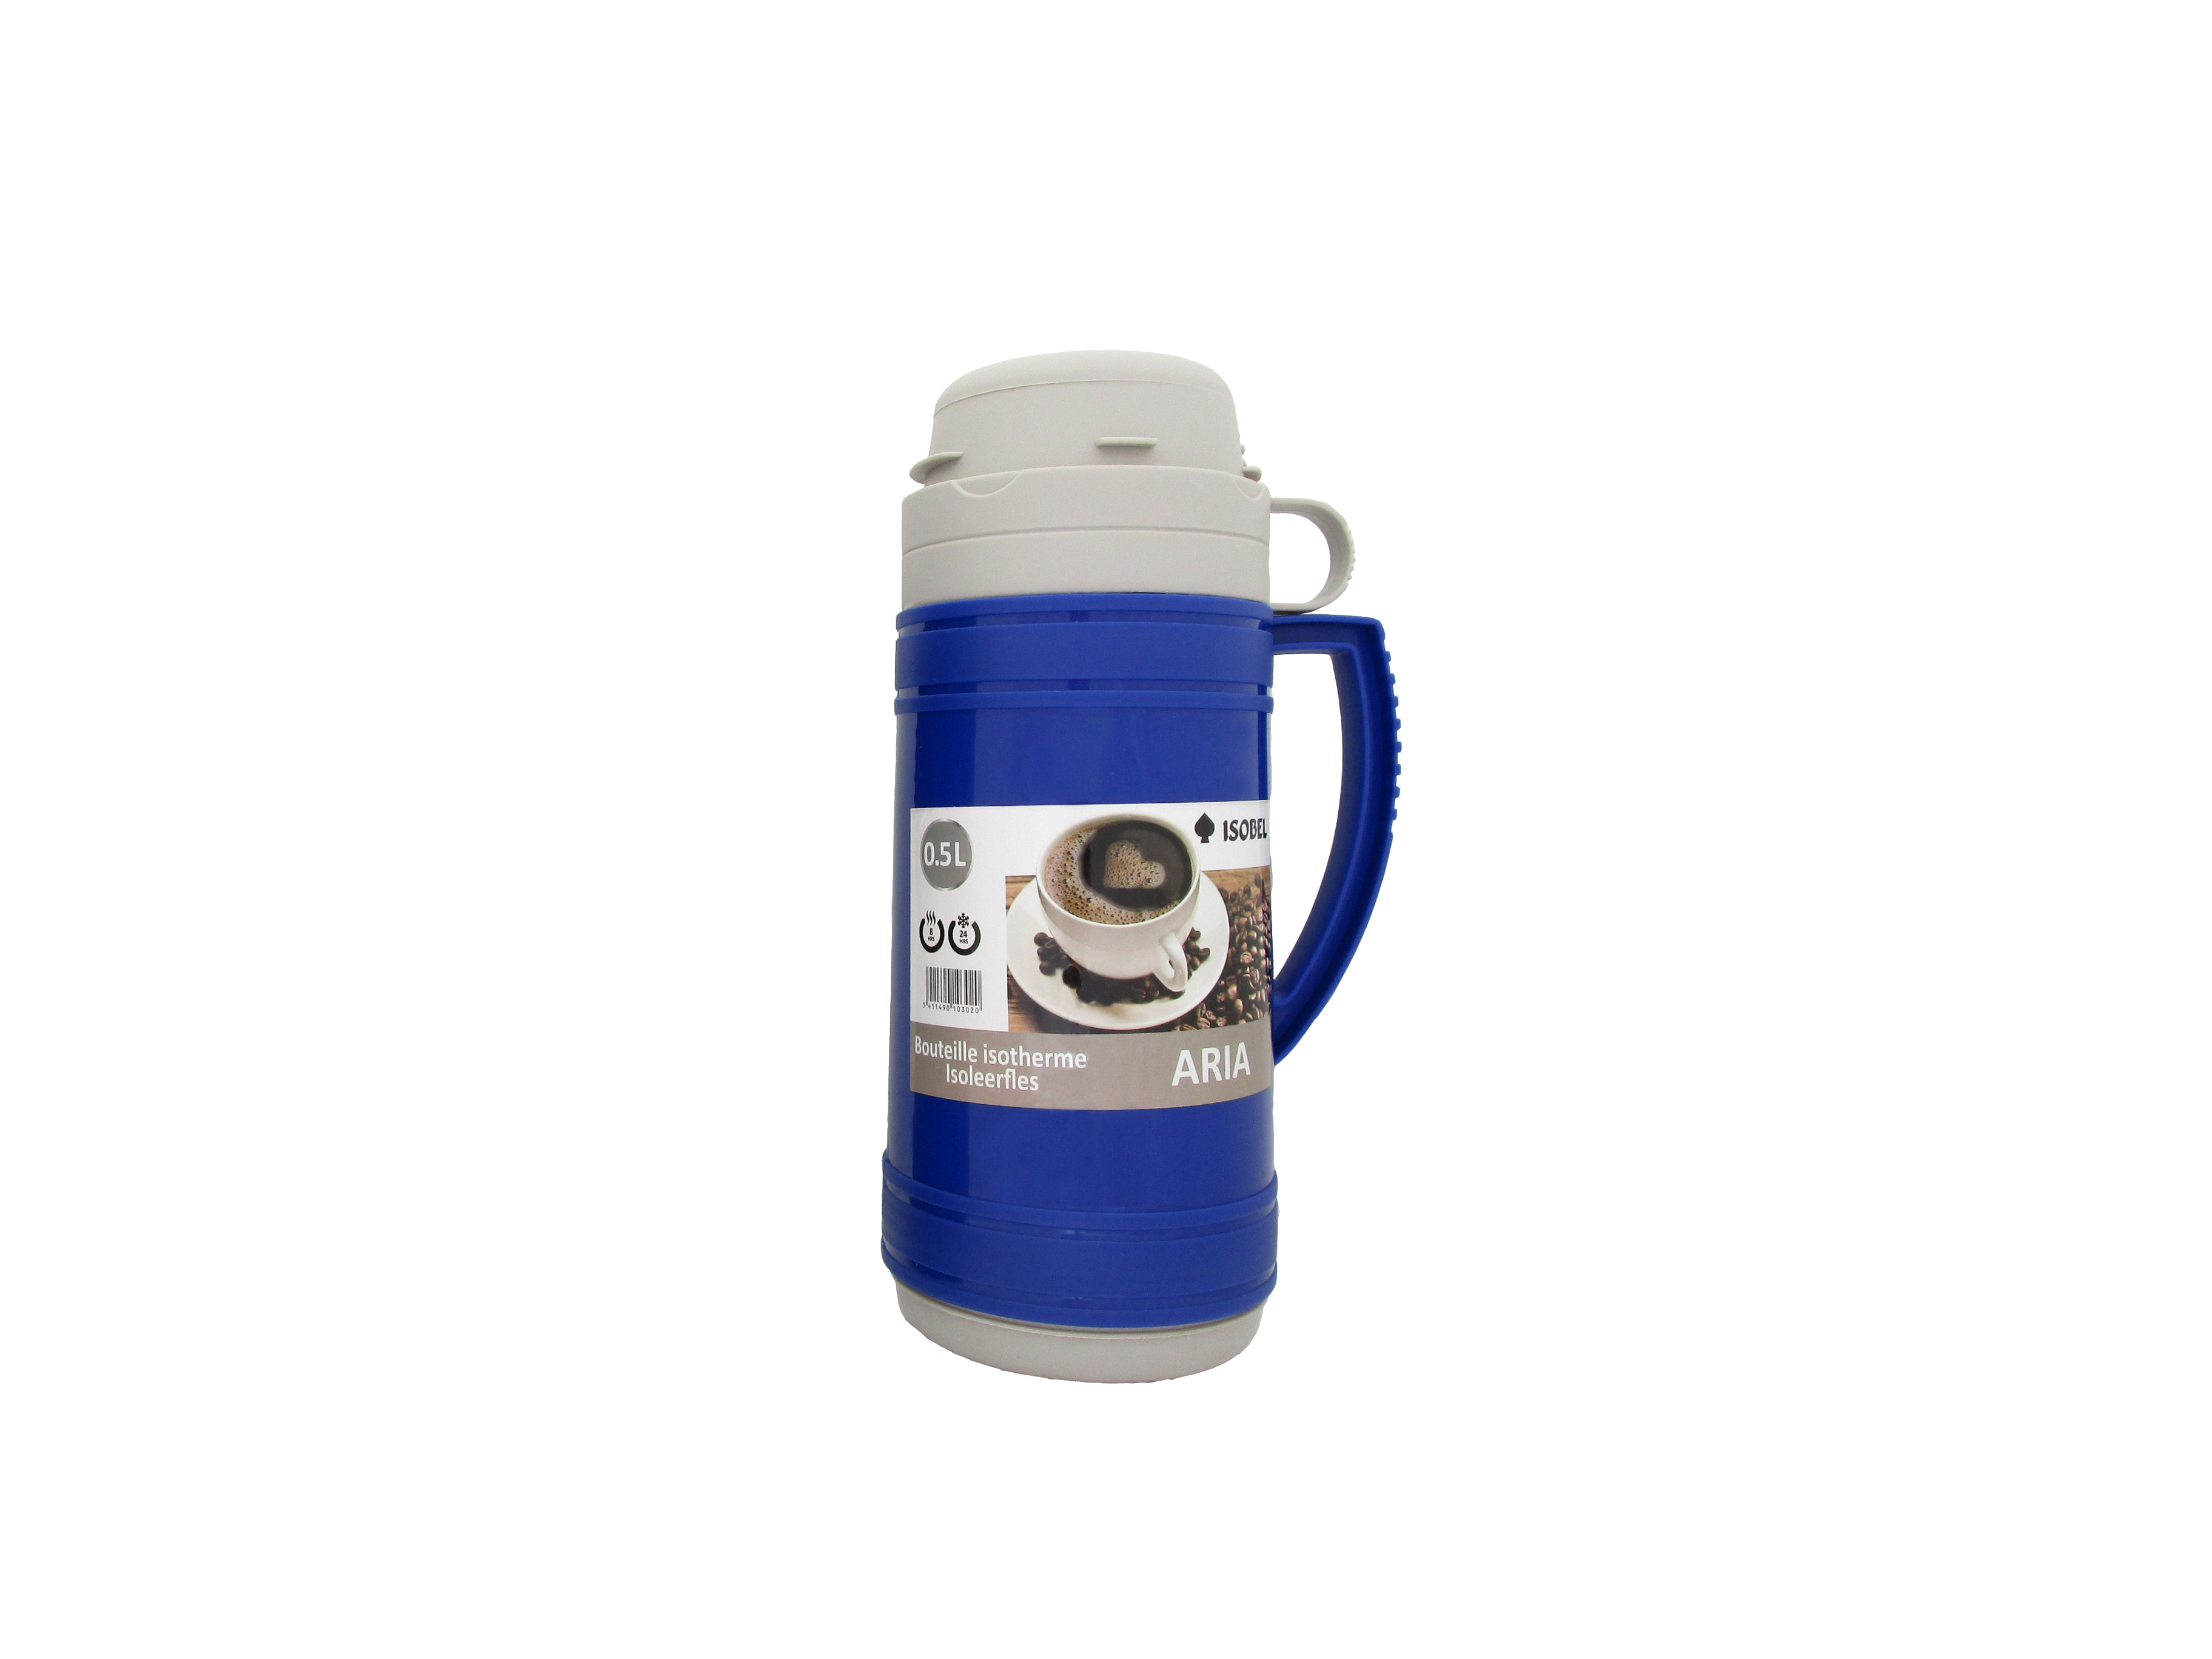 ARIA050-012 - Vacuum flask ARIA blue 0.5 L - Isobel